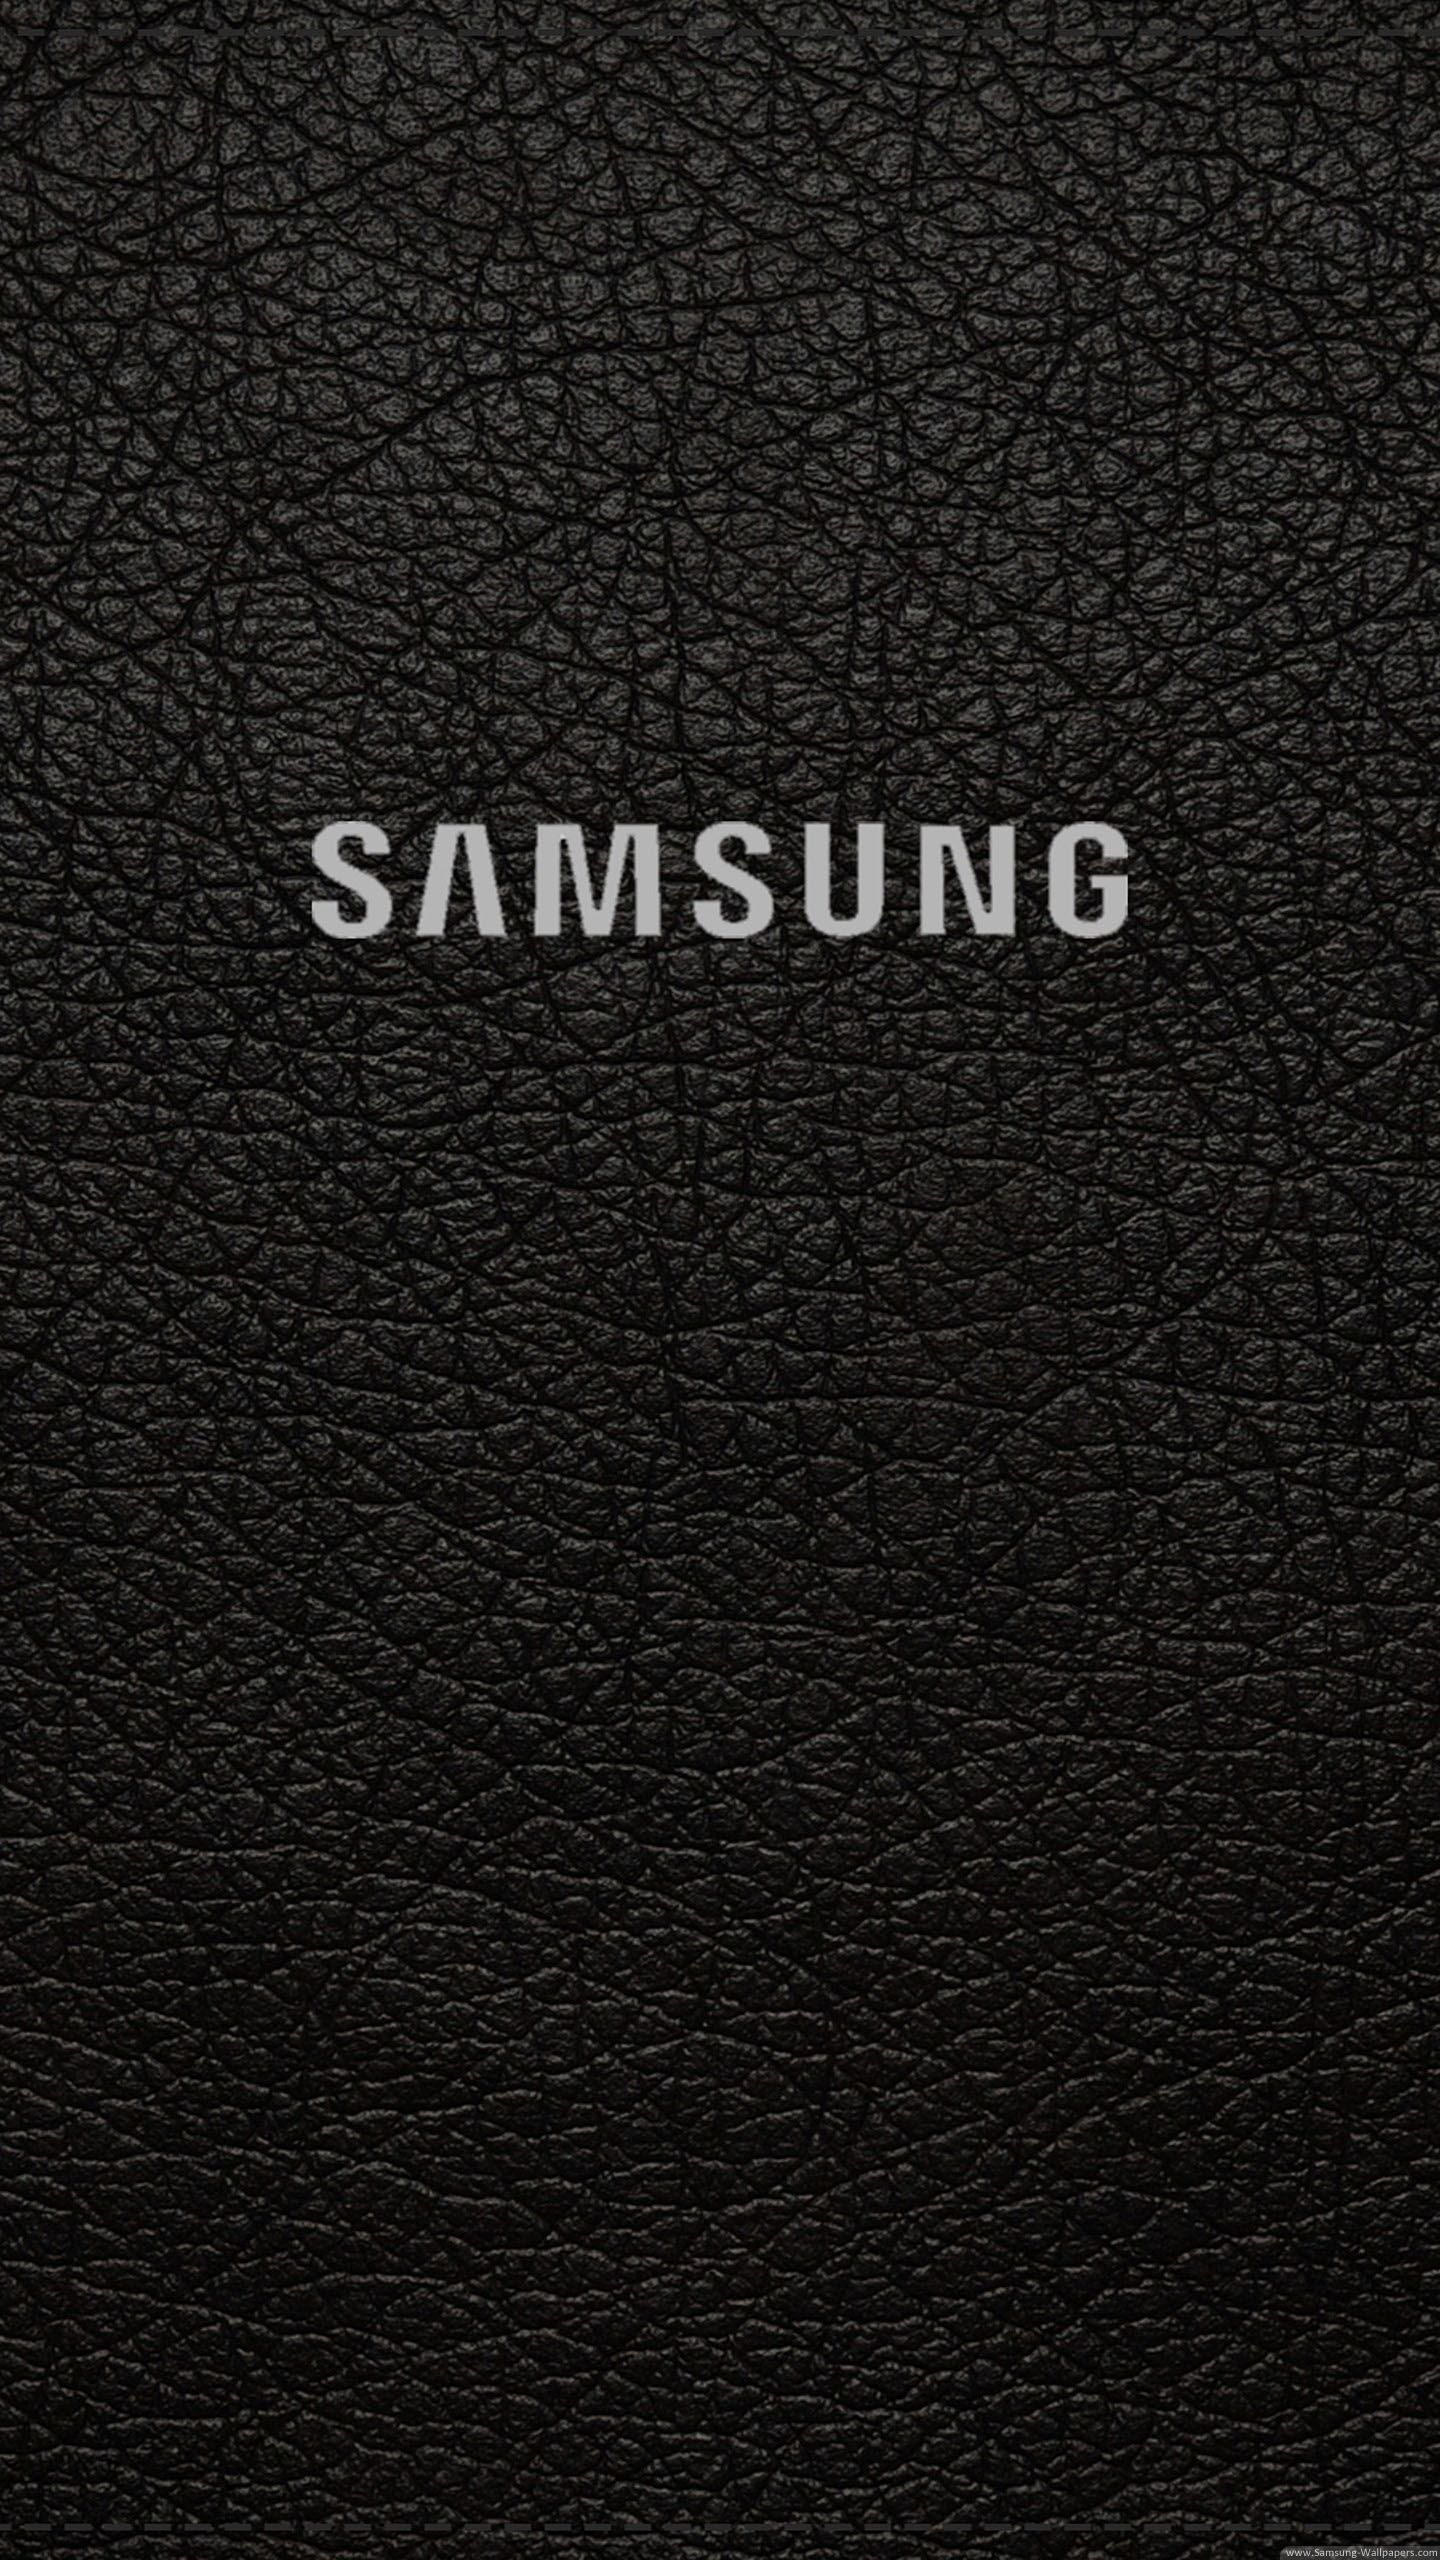 Fondos de Samsung gratis para fondo móvil | PNG transparente mejor